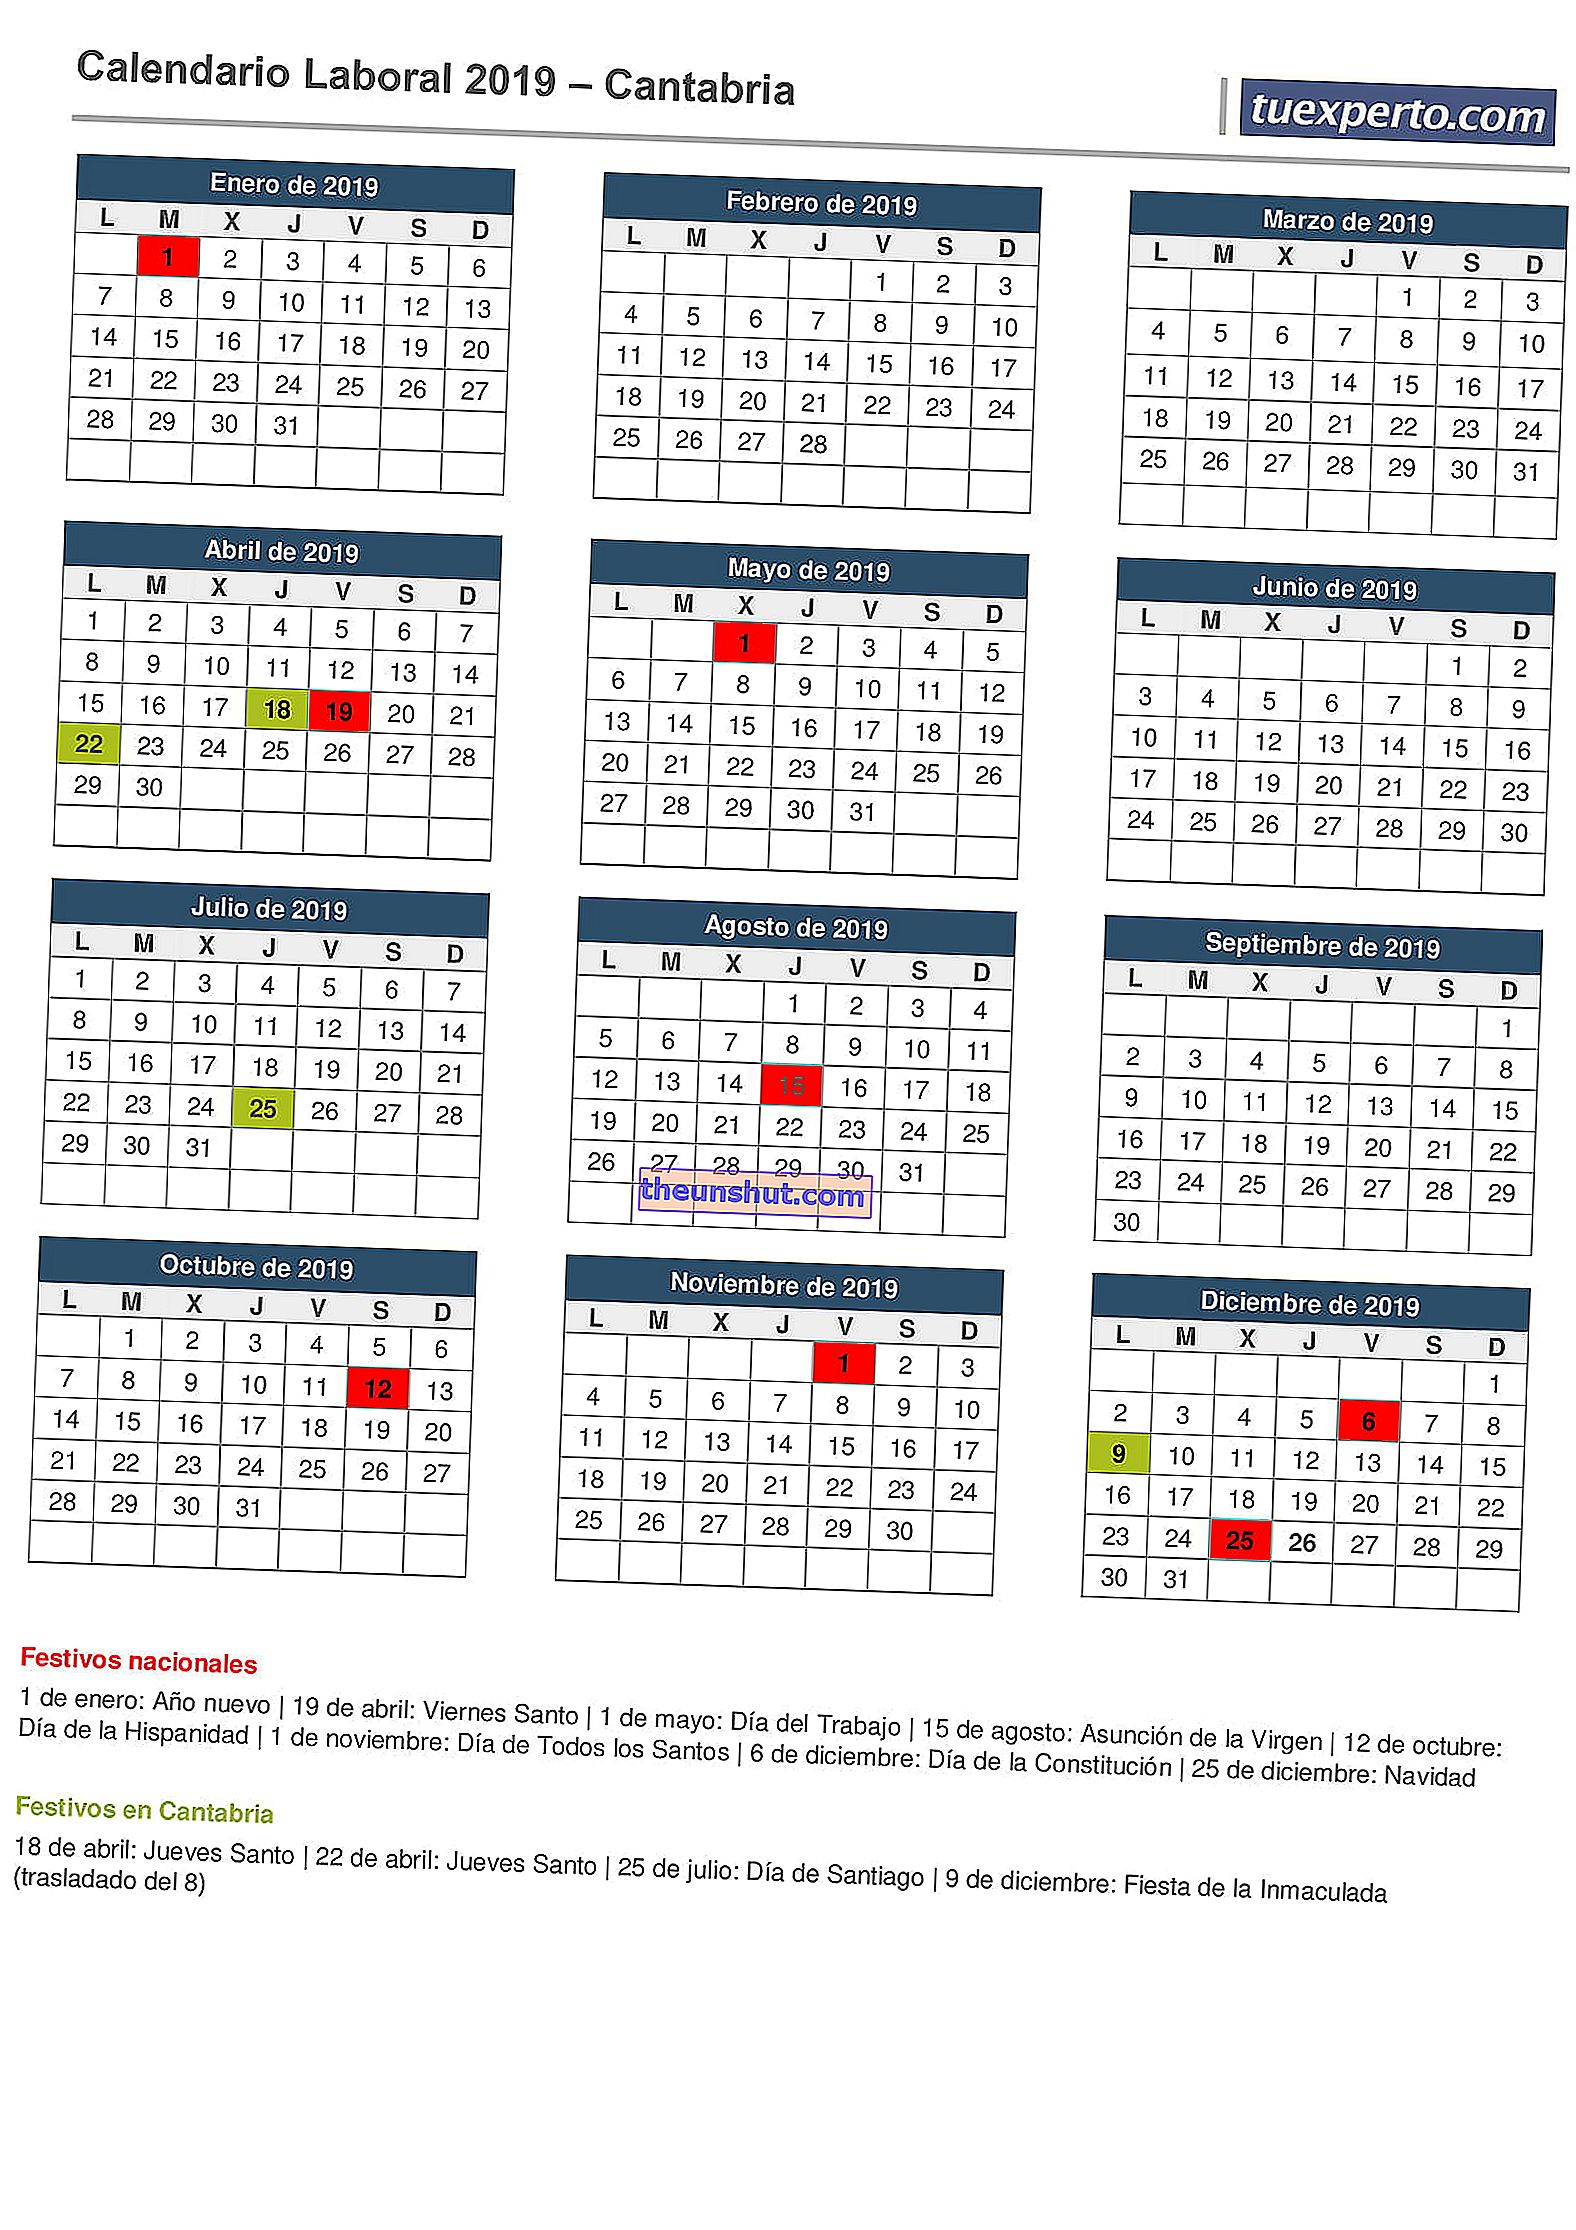 Calendario di lavoro della Cantabria